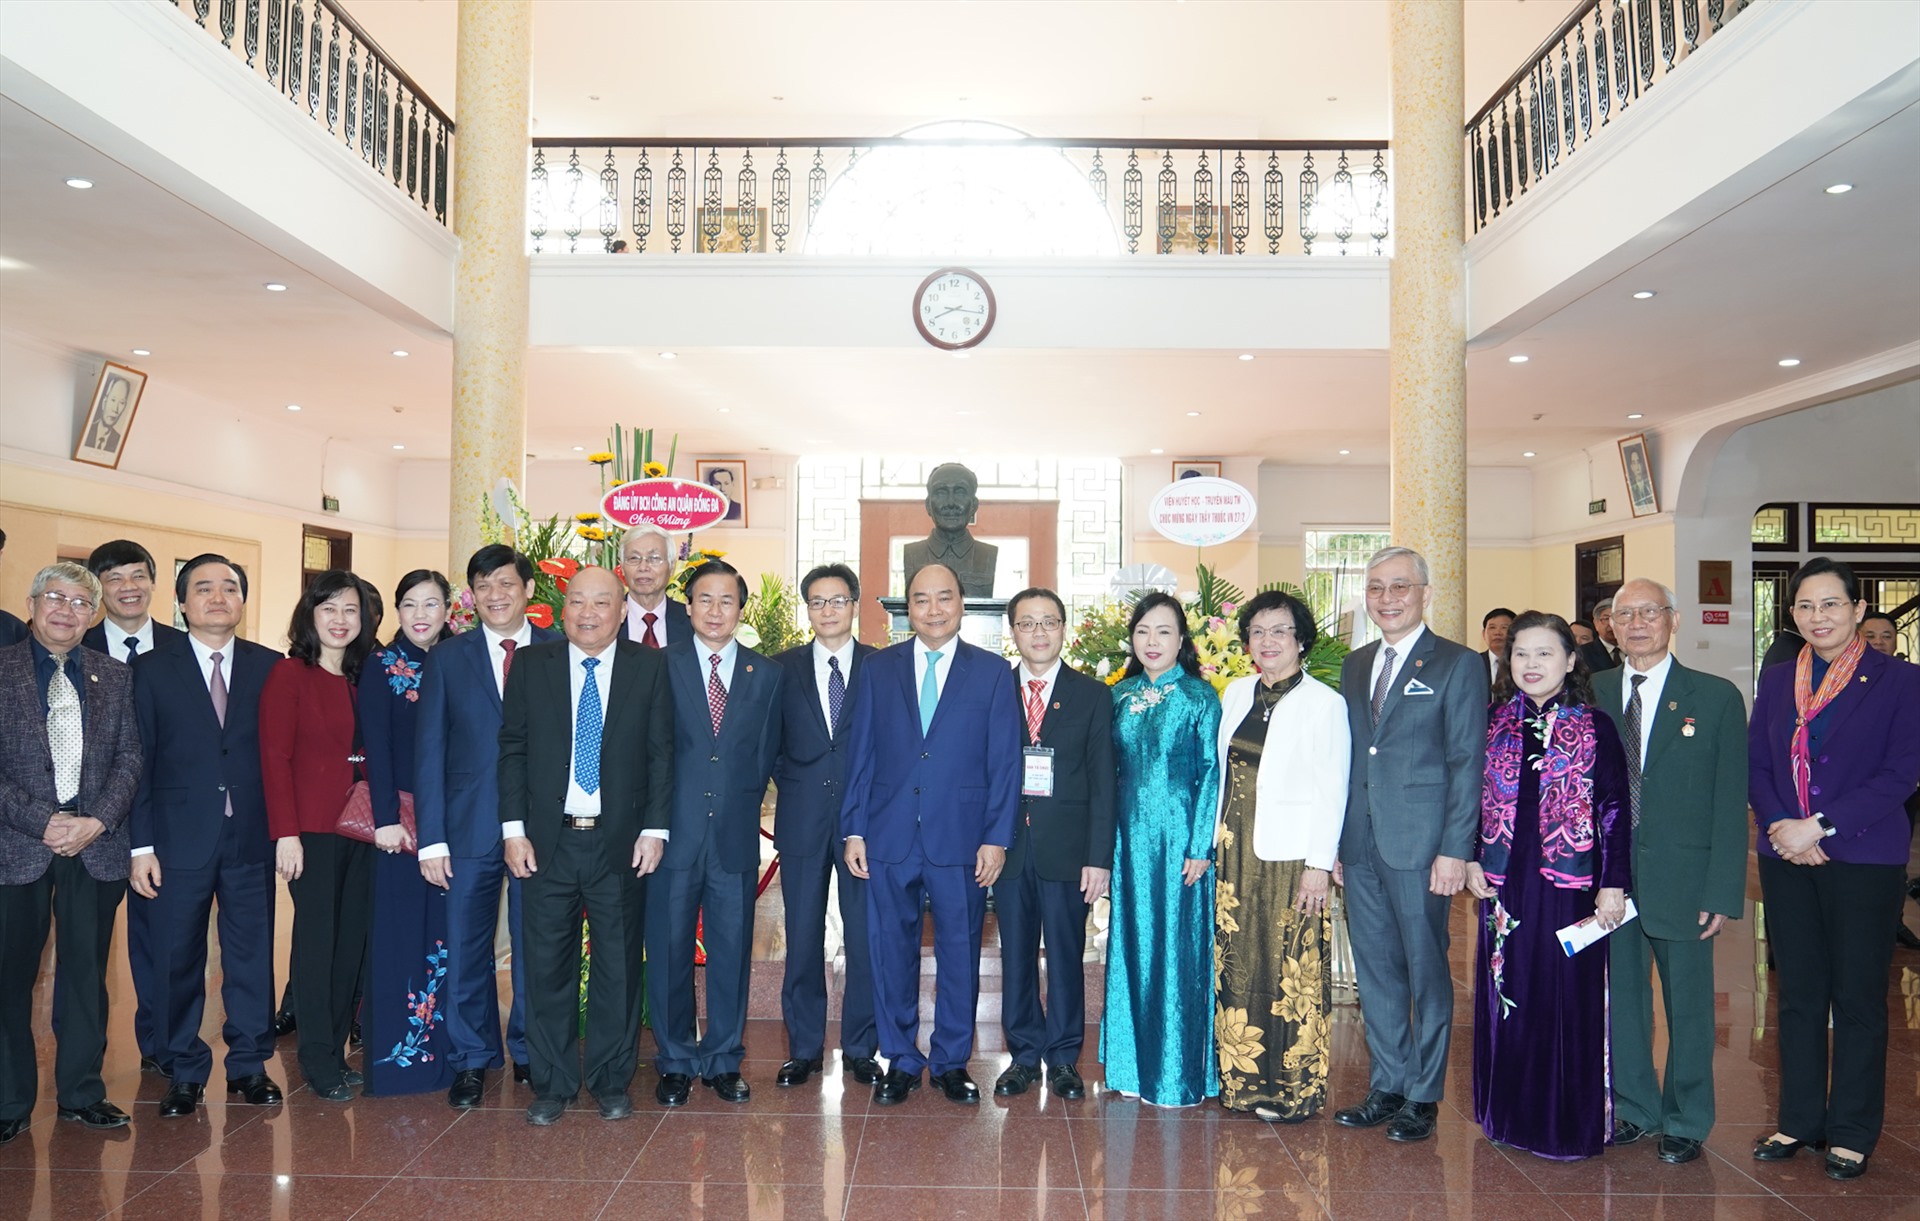 Thủ tướng Nguyễn Xuân Phúc, Phó Thủ tướng Vũ Đức Đam cùng các đại biểu dự buổi lễ.